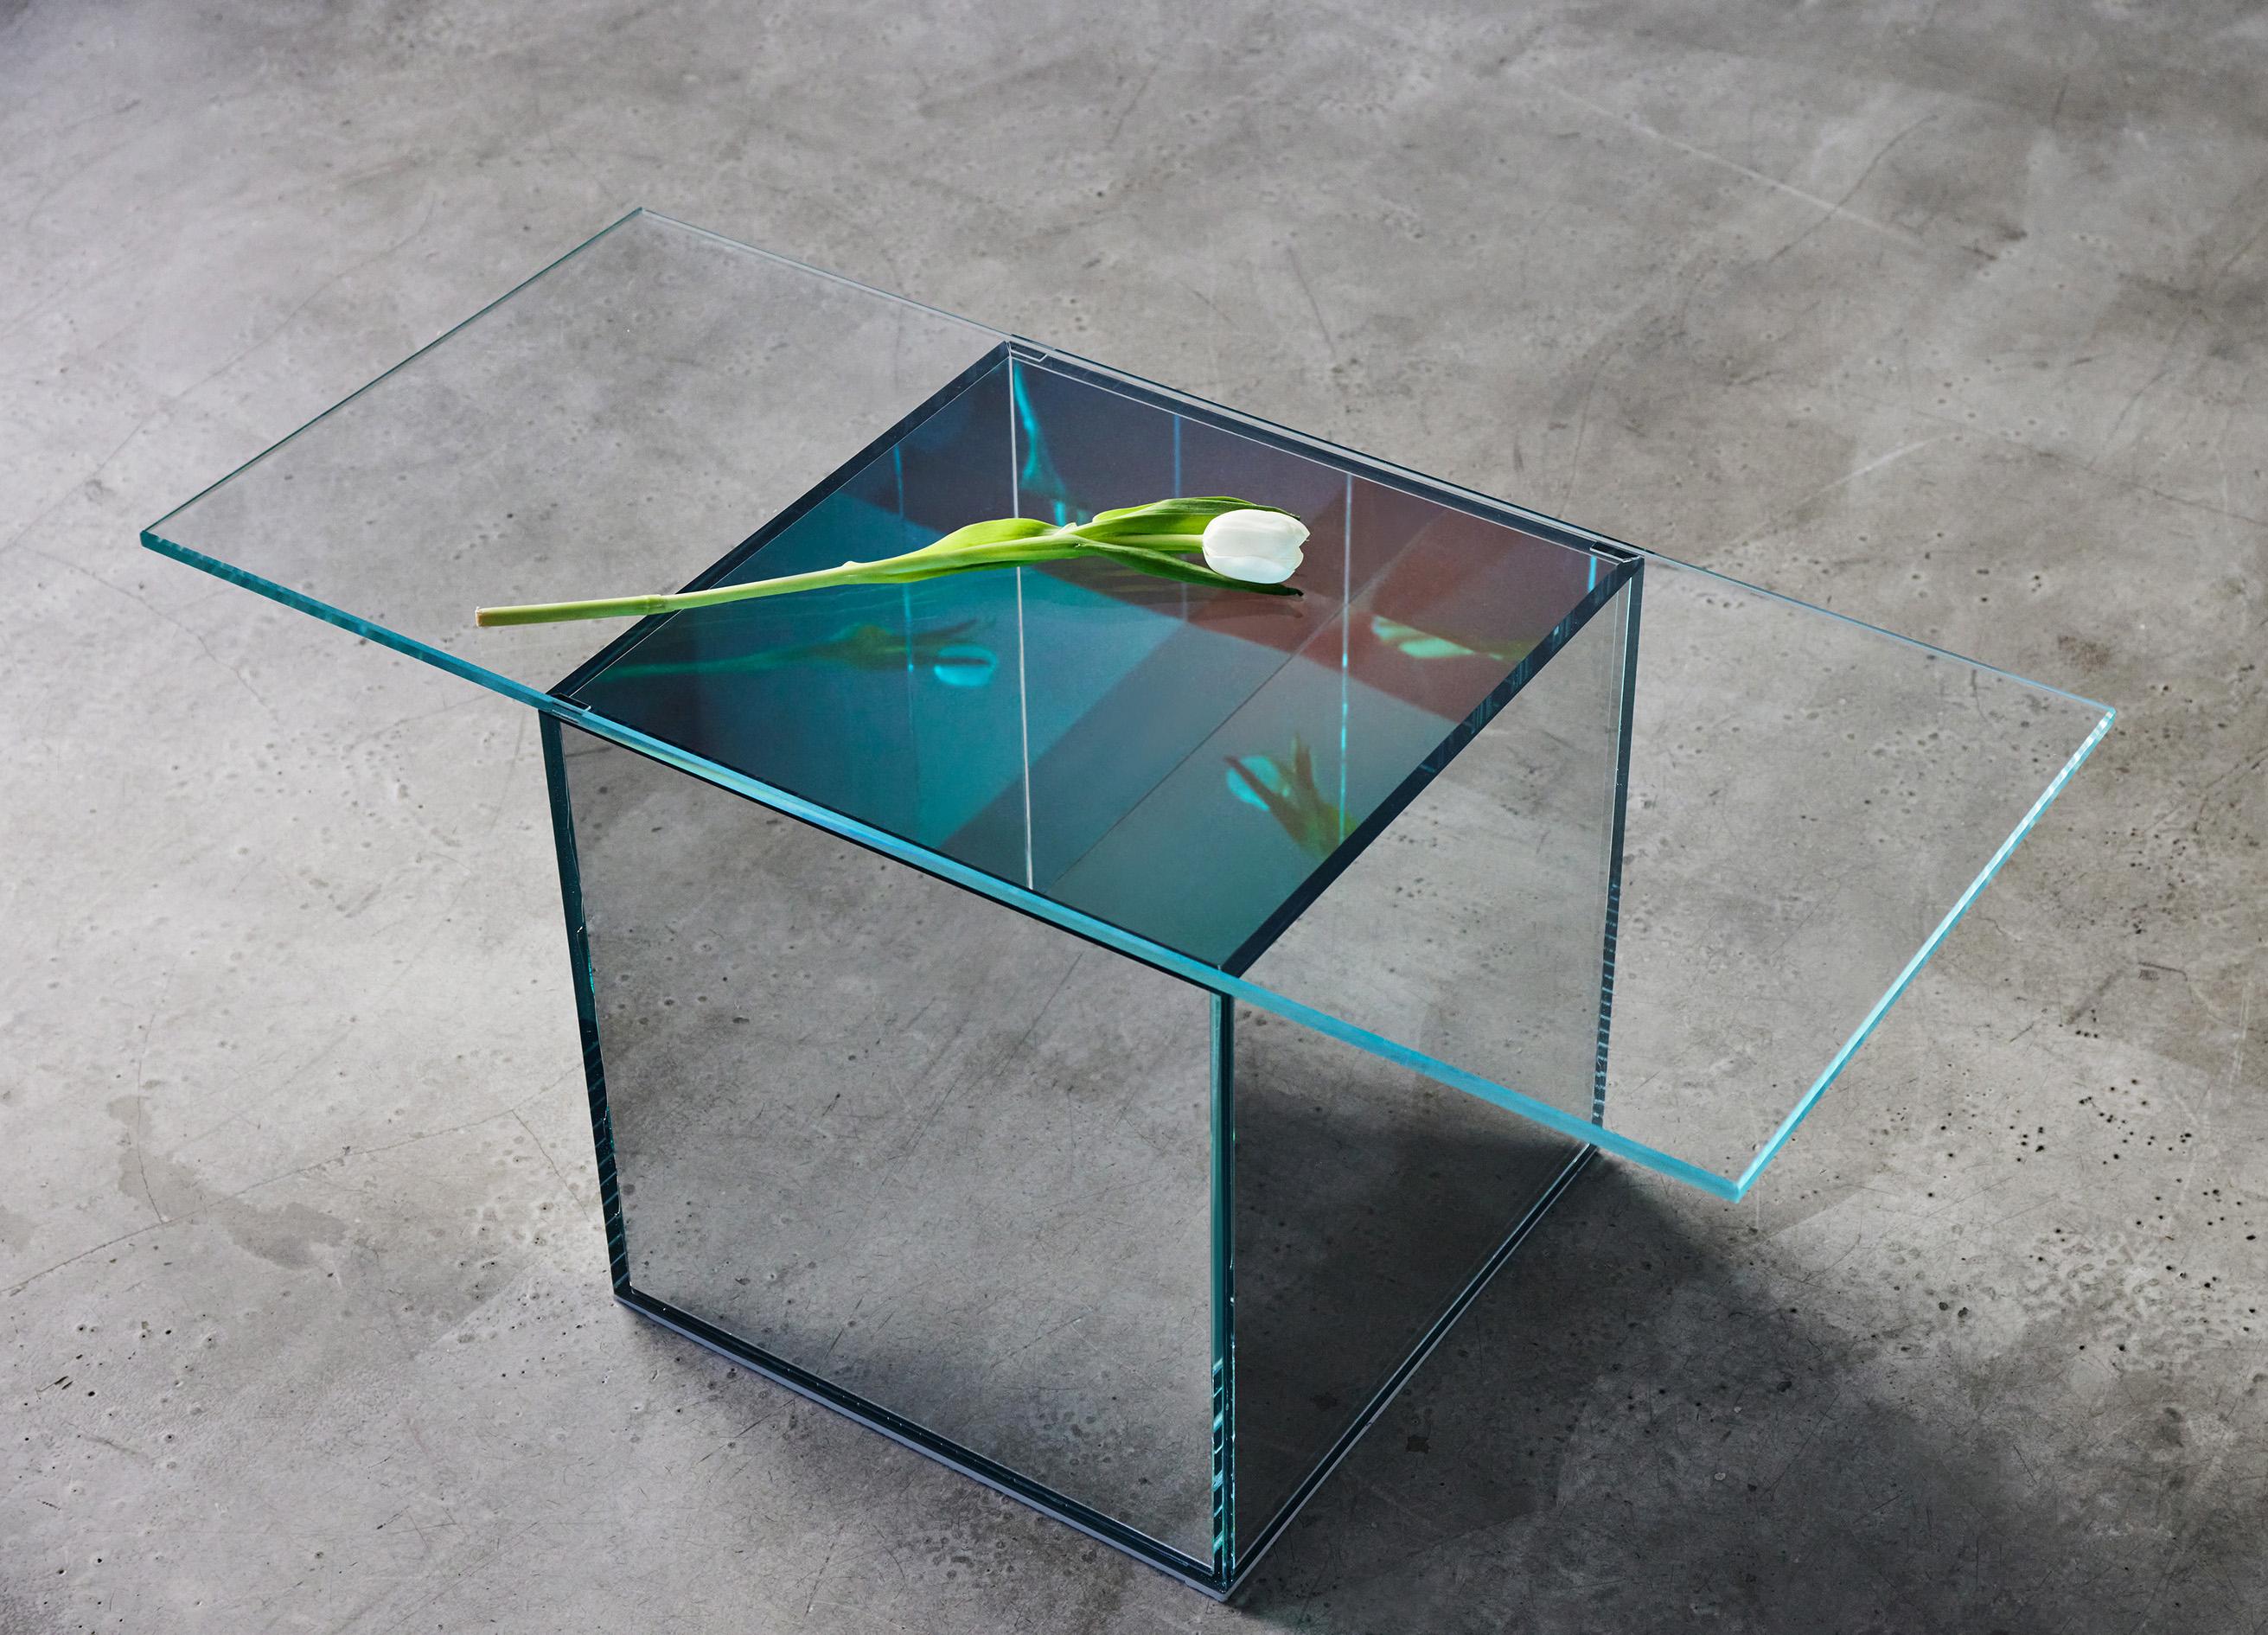 Der VIEW Couchtisch ist Teil einer fünfteiligen Kollektion von skulpturalen Glas- und Spiegelmöbeln, die interaktive Ansichten in Objekte und Möbel bringen. Der VIEW Couchtisch besteht aus ultraklarem, eisenarmem Glas und einem verspiegelten